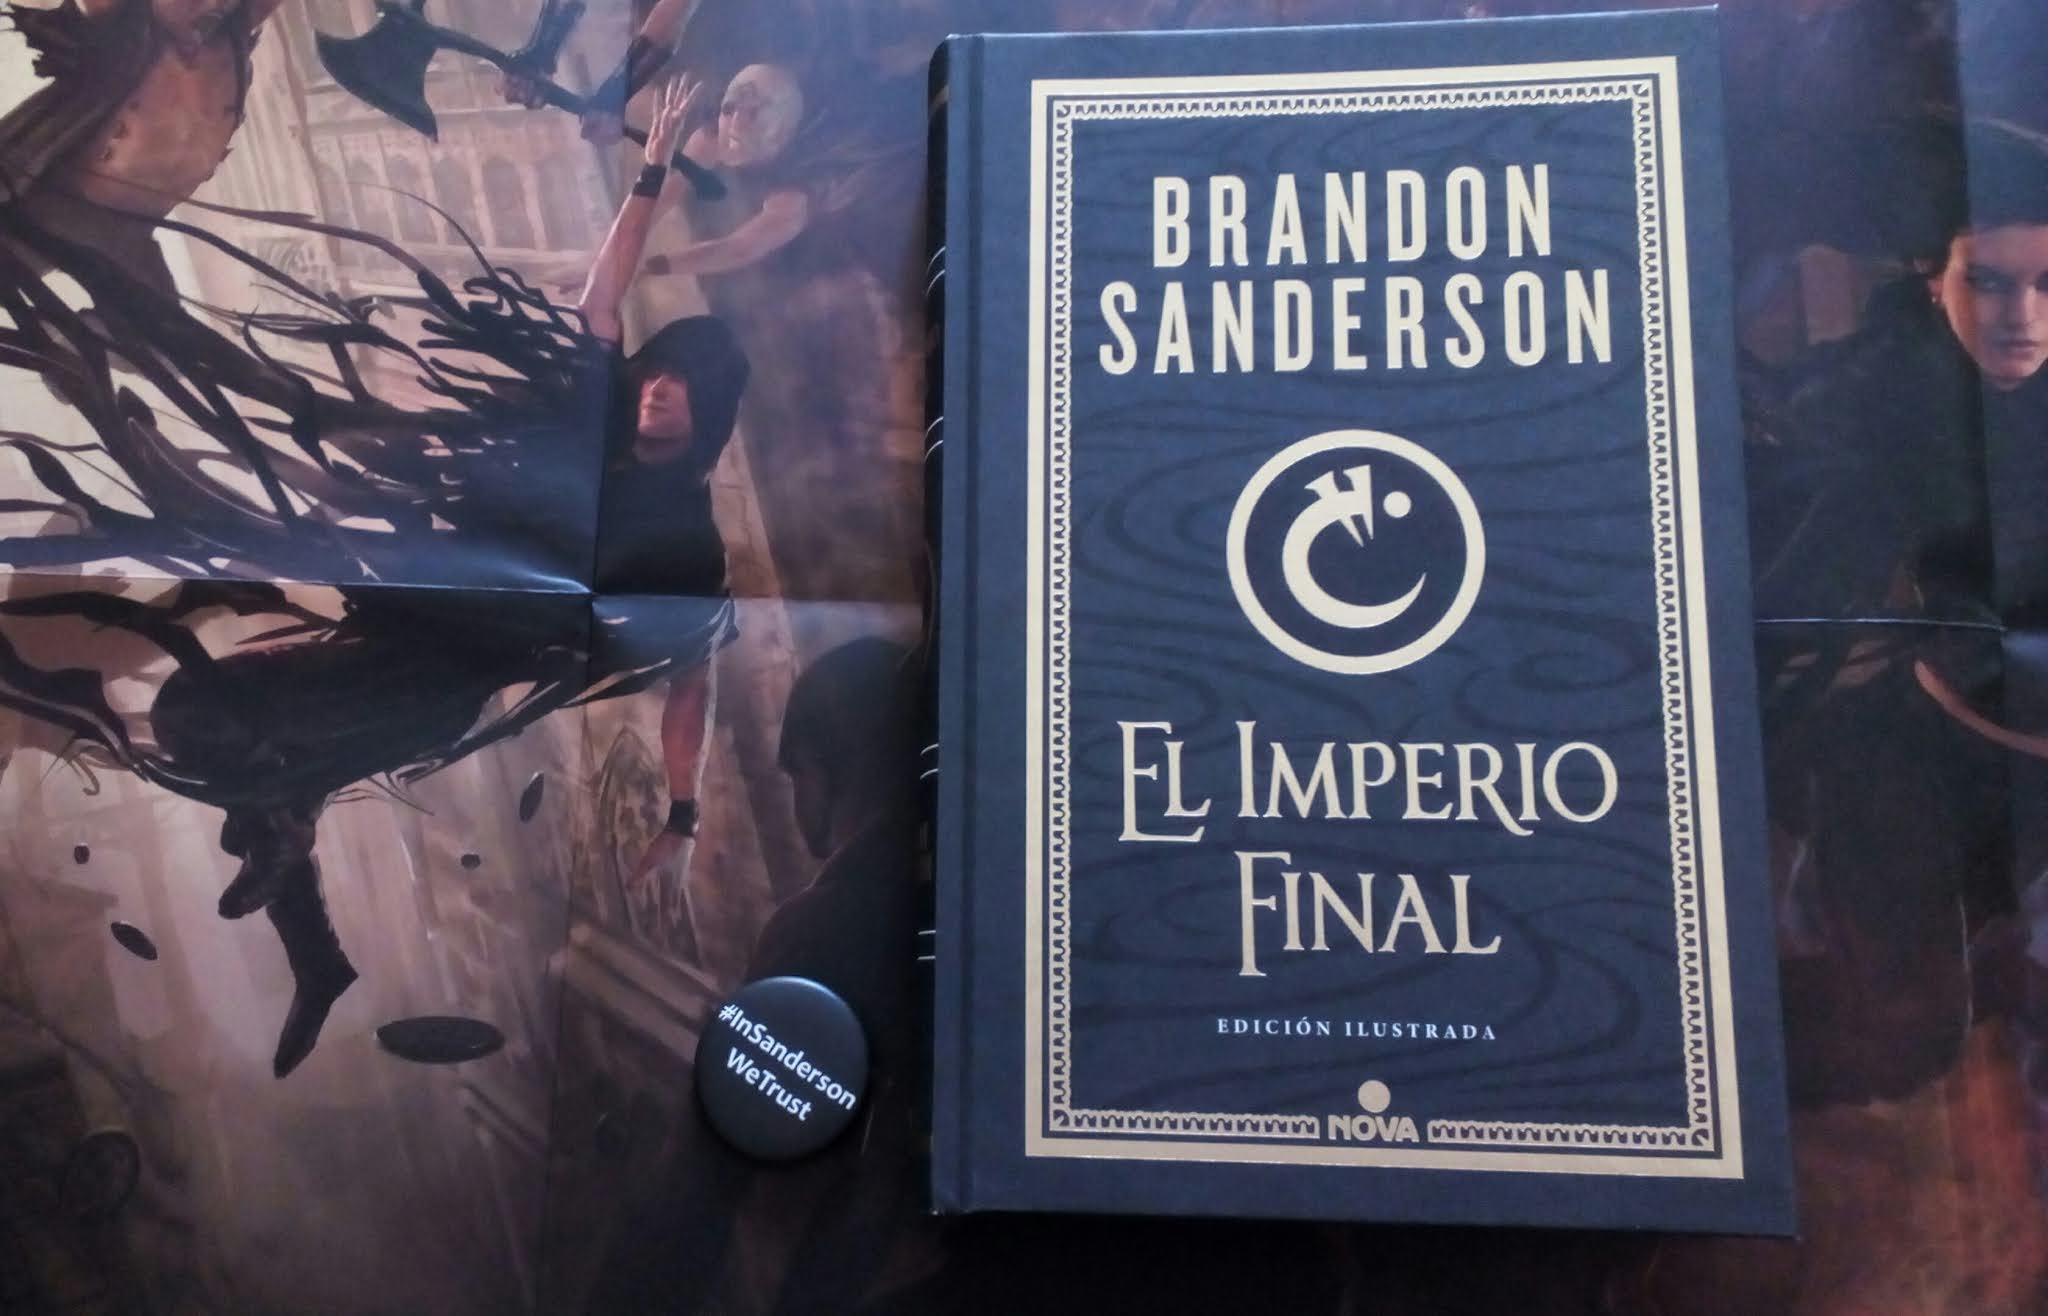 El Imperio Final de Brandon Sanderson se publica en edición ilustrada